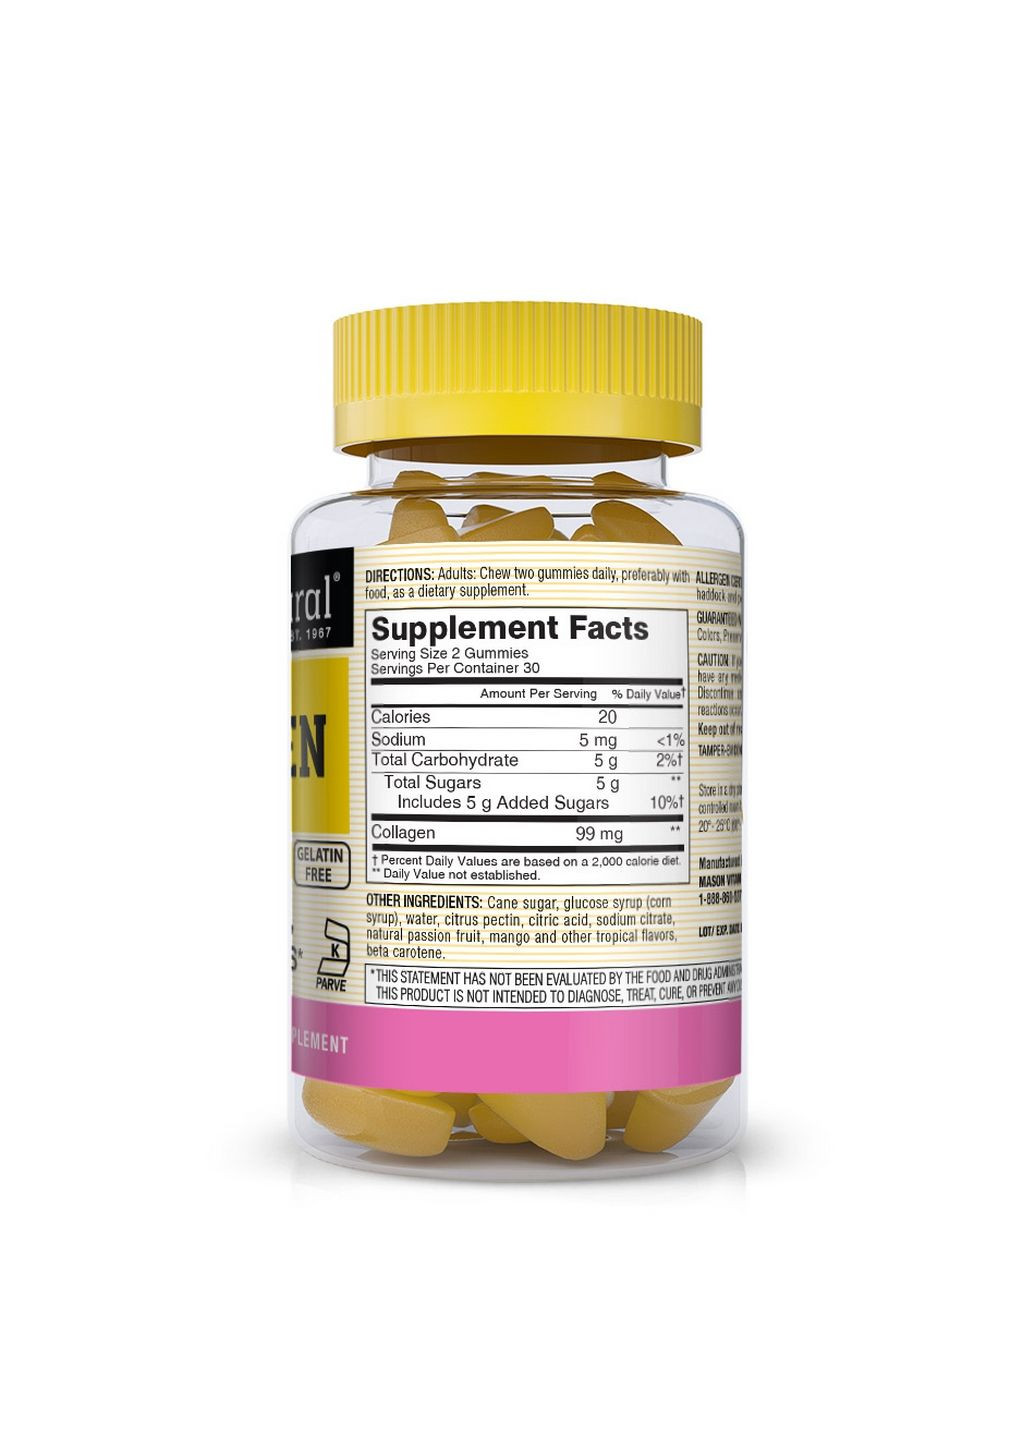 Препарат для суставов и связок Collagen, 60 жевательных таблеток Mason Natural (293342476)